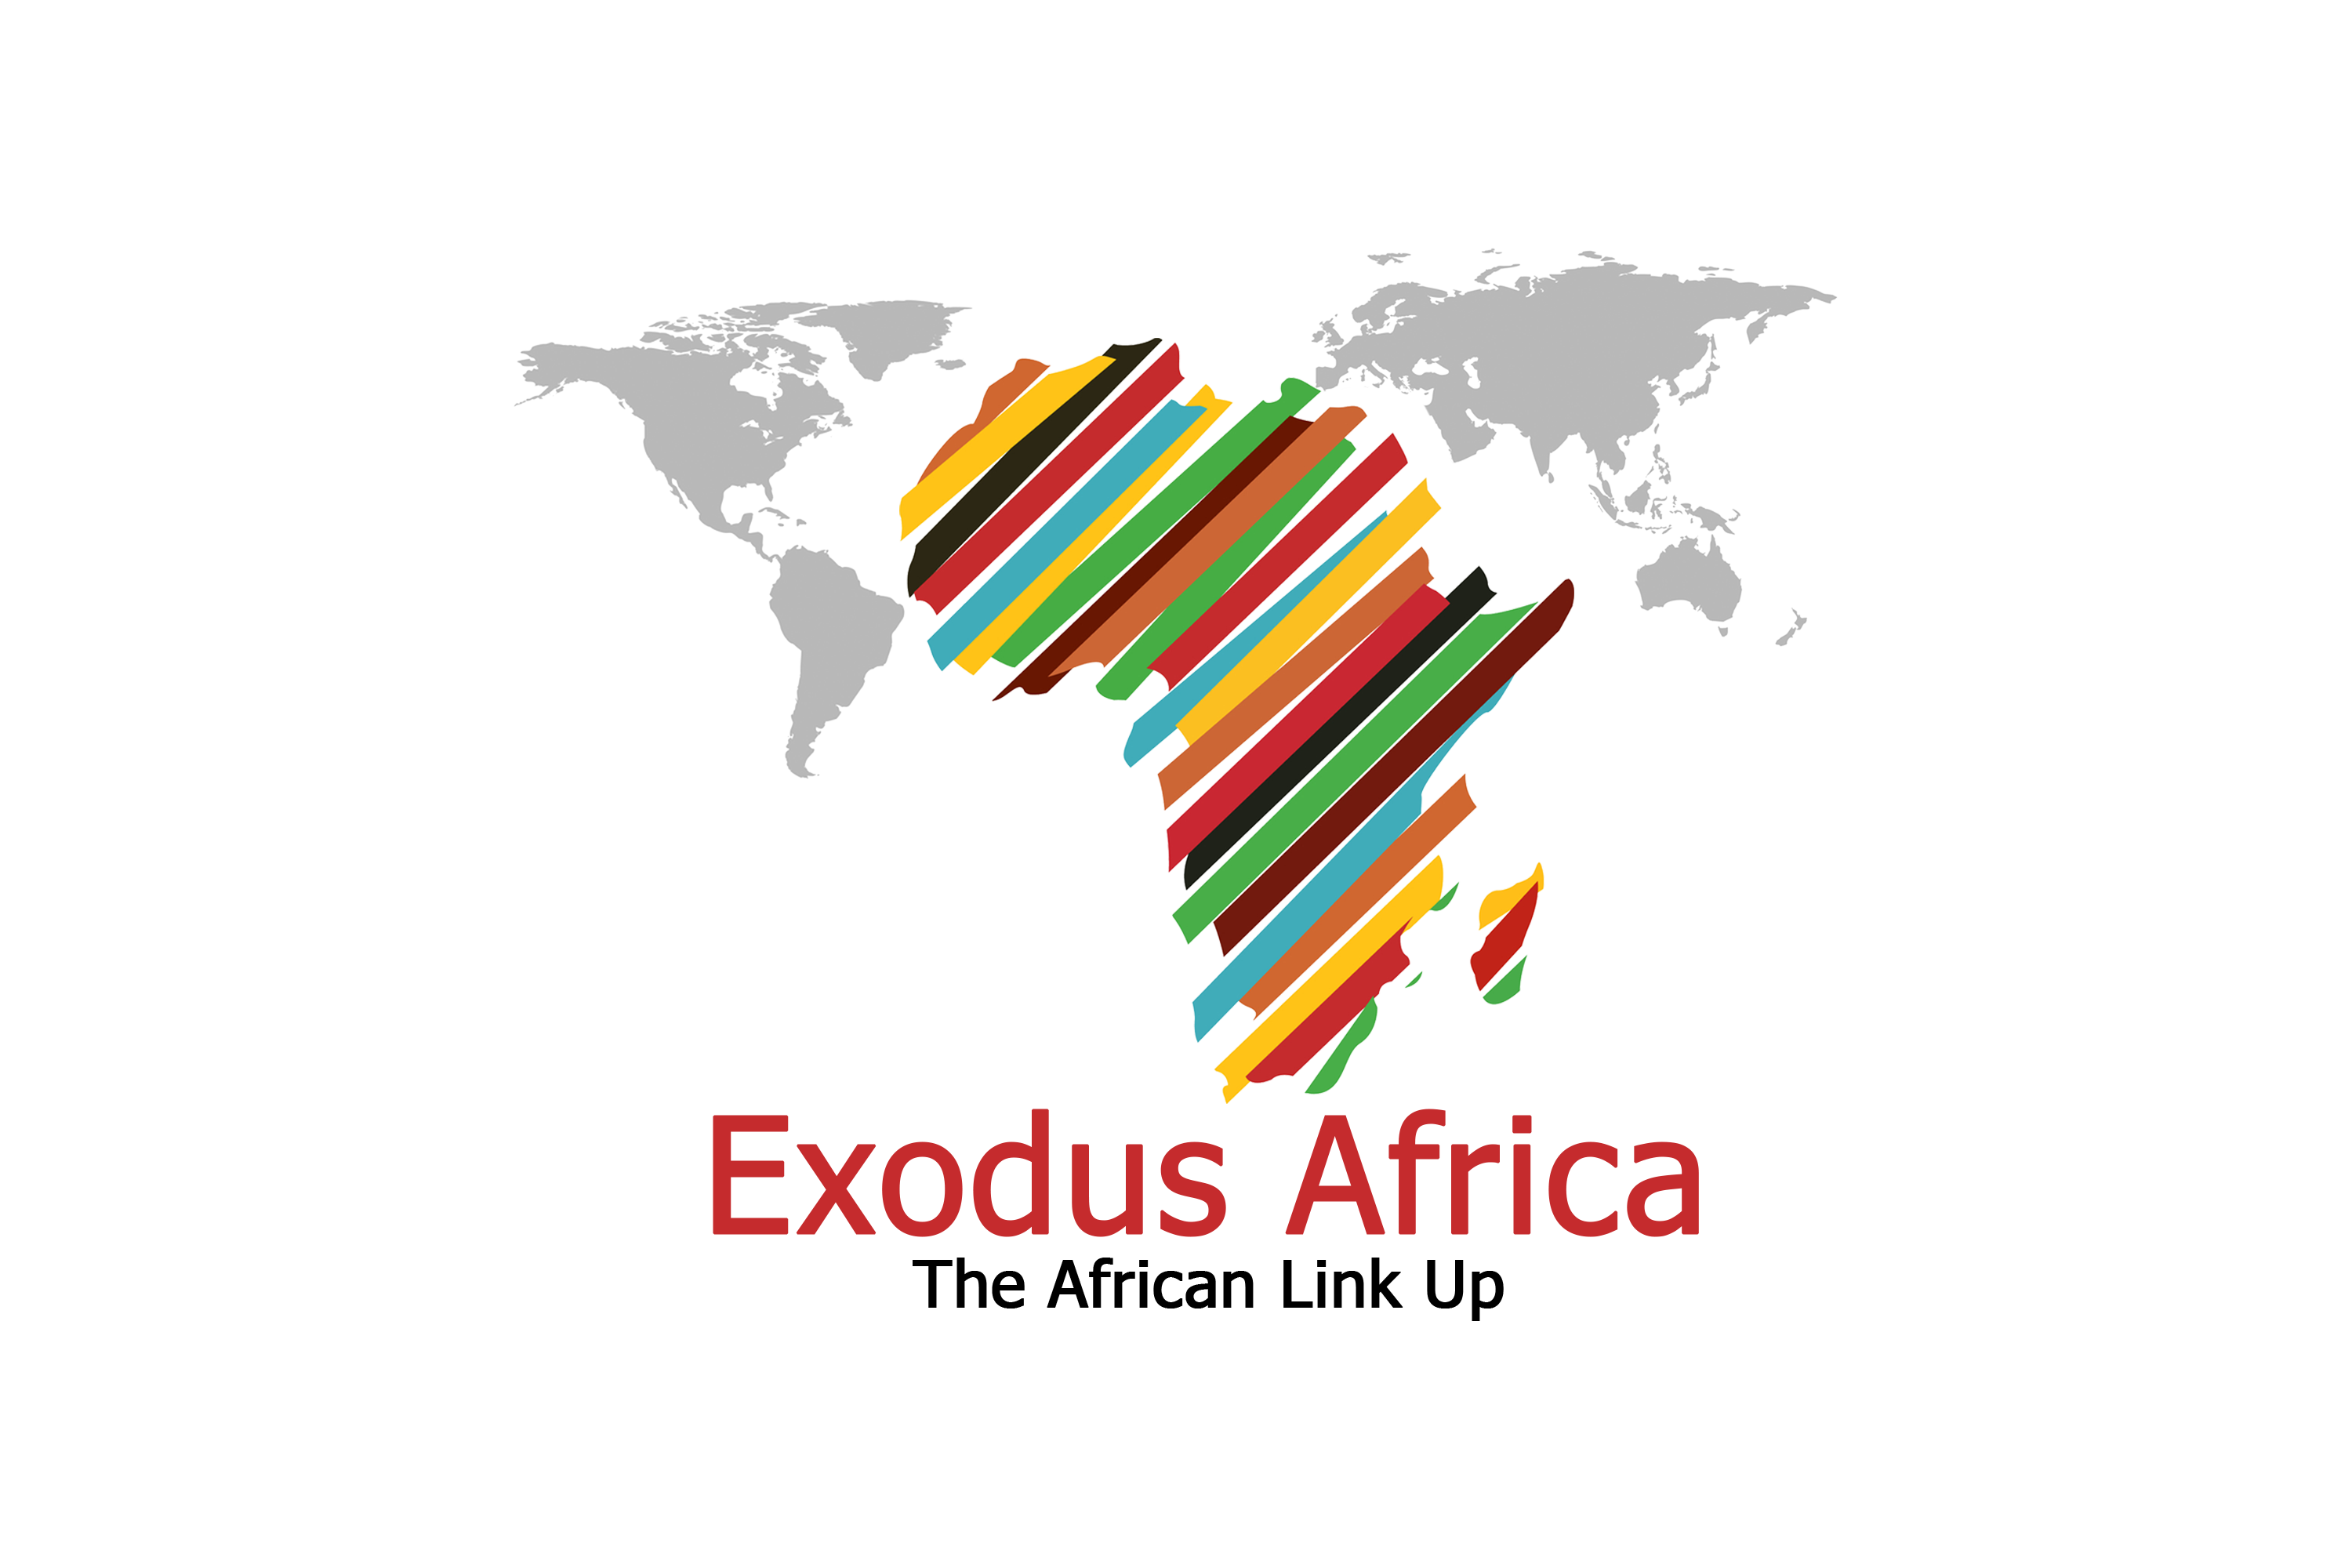 Exodus Africa